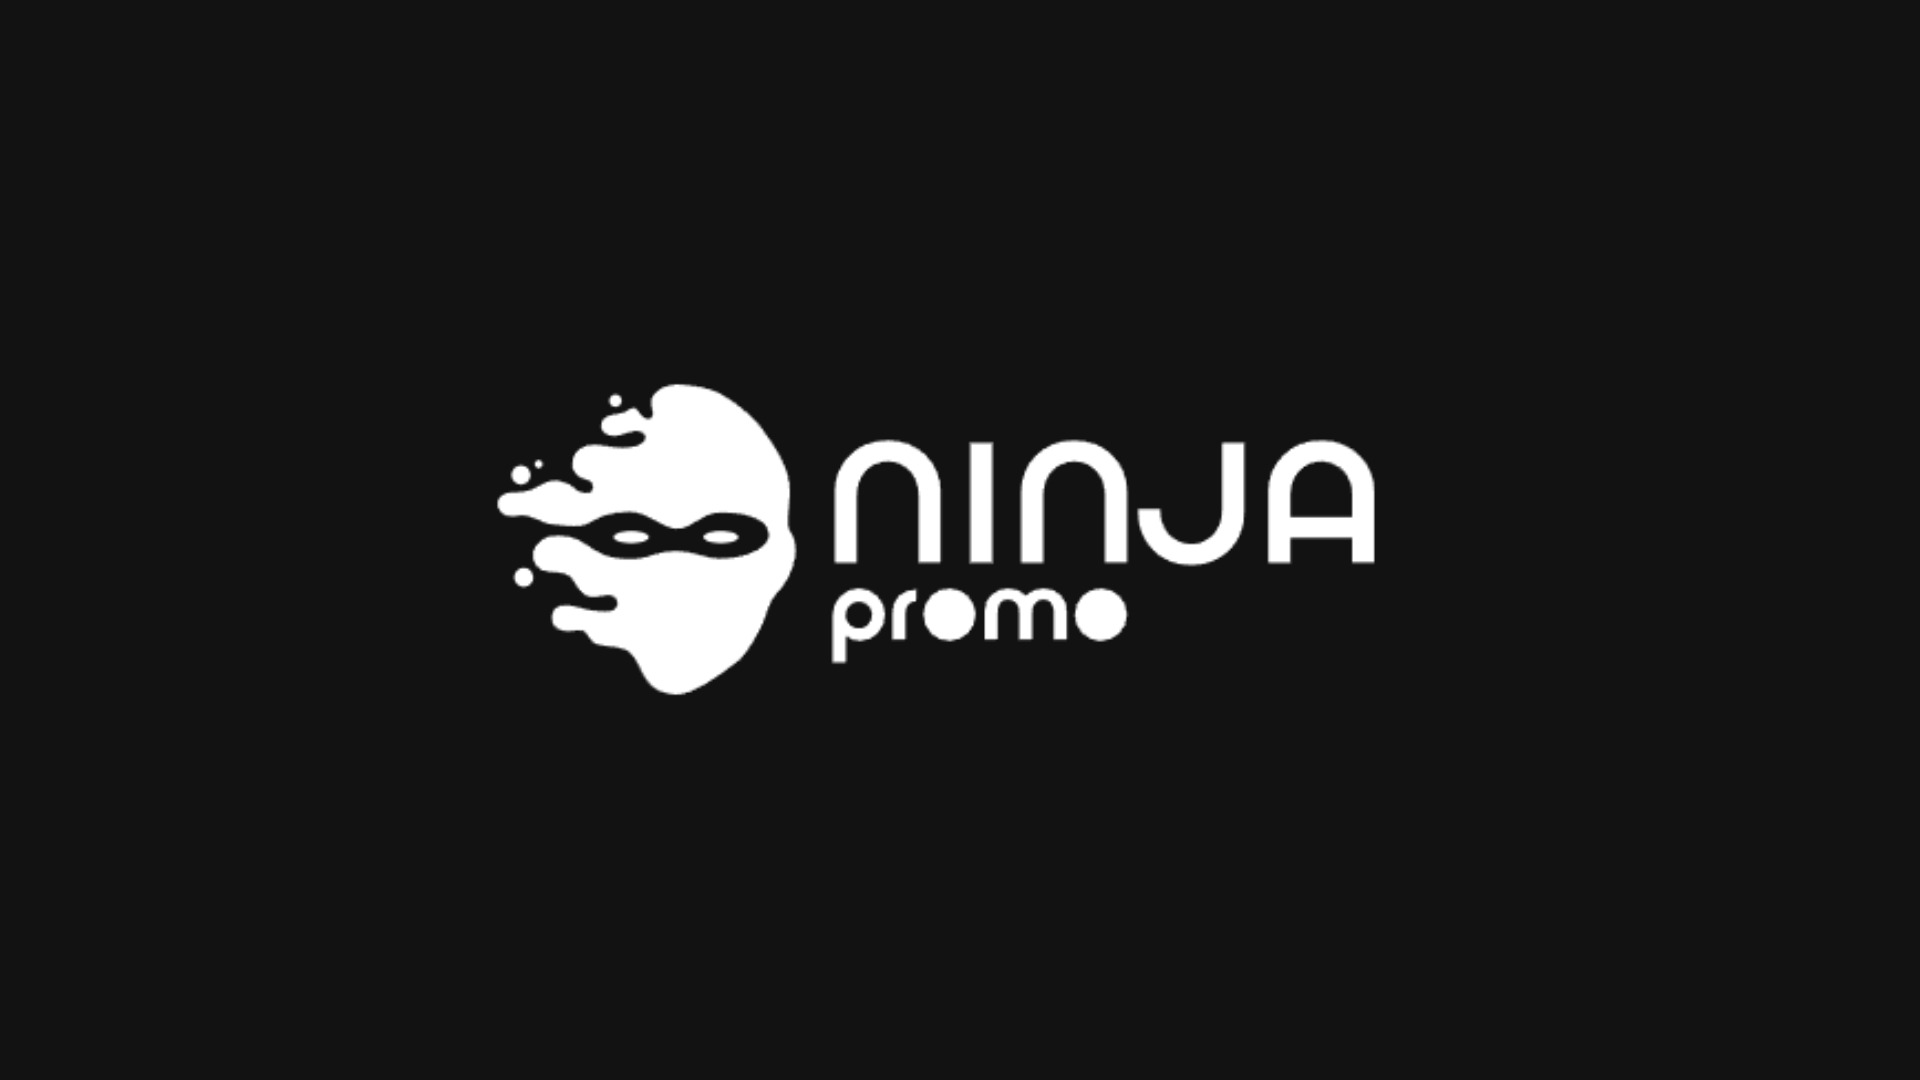 ninja promo logo